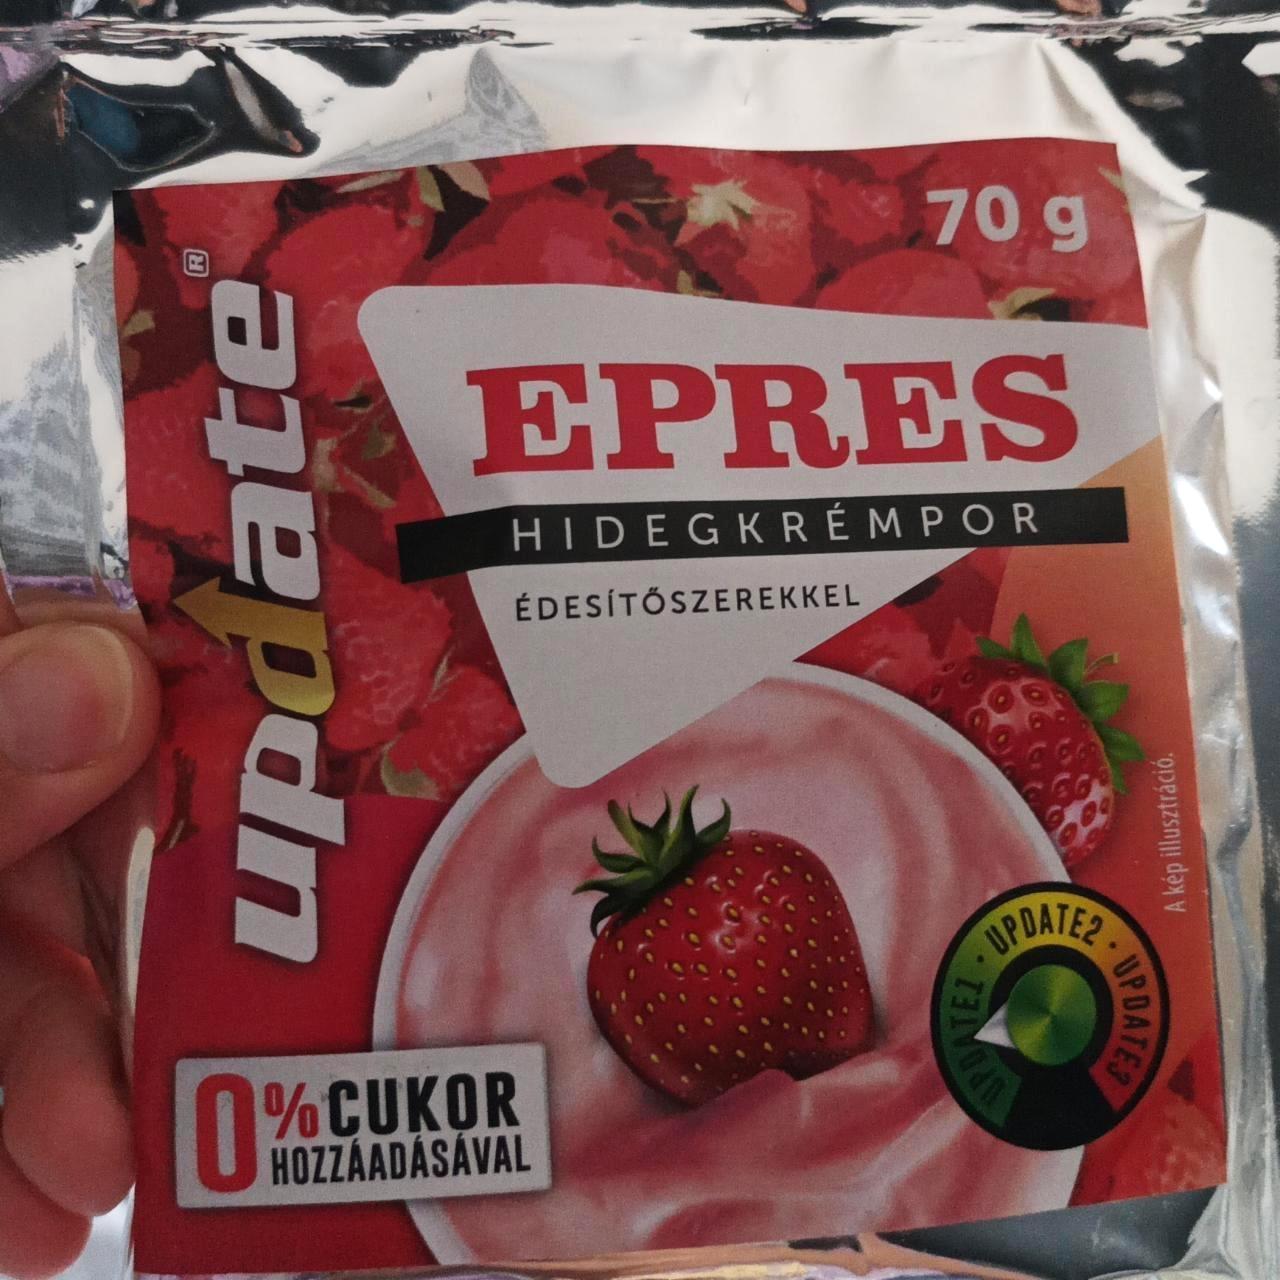 Képek - Epres hidegkrémpor édesítőszerekkel kész változat Norbi update